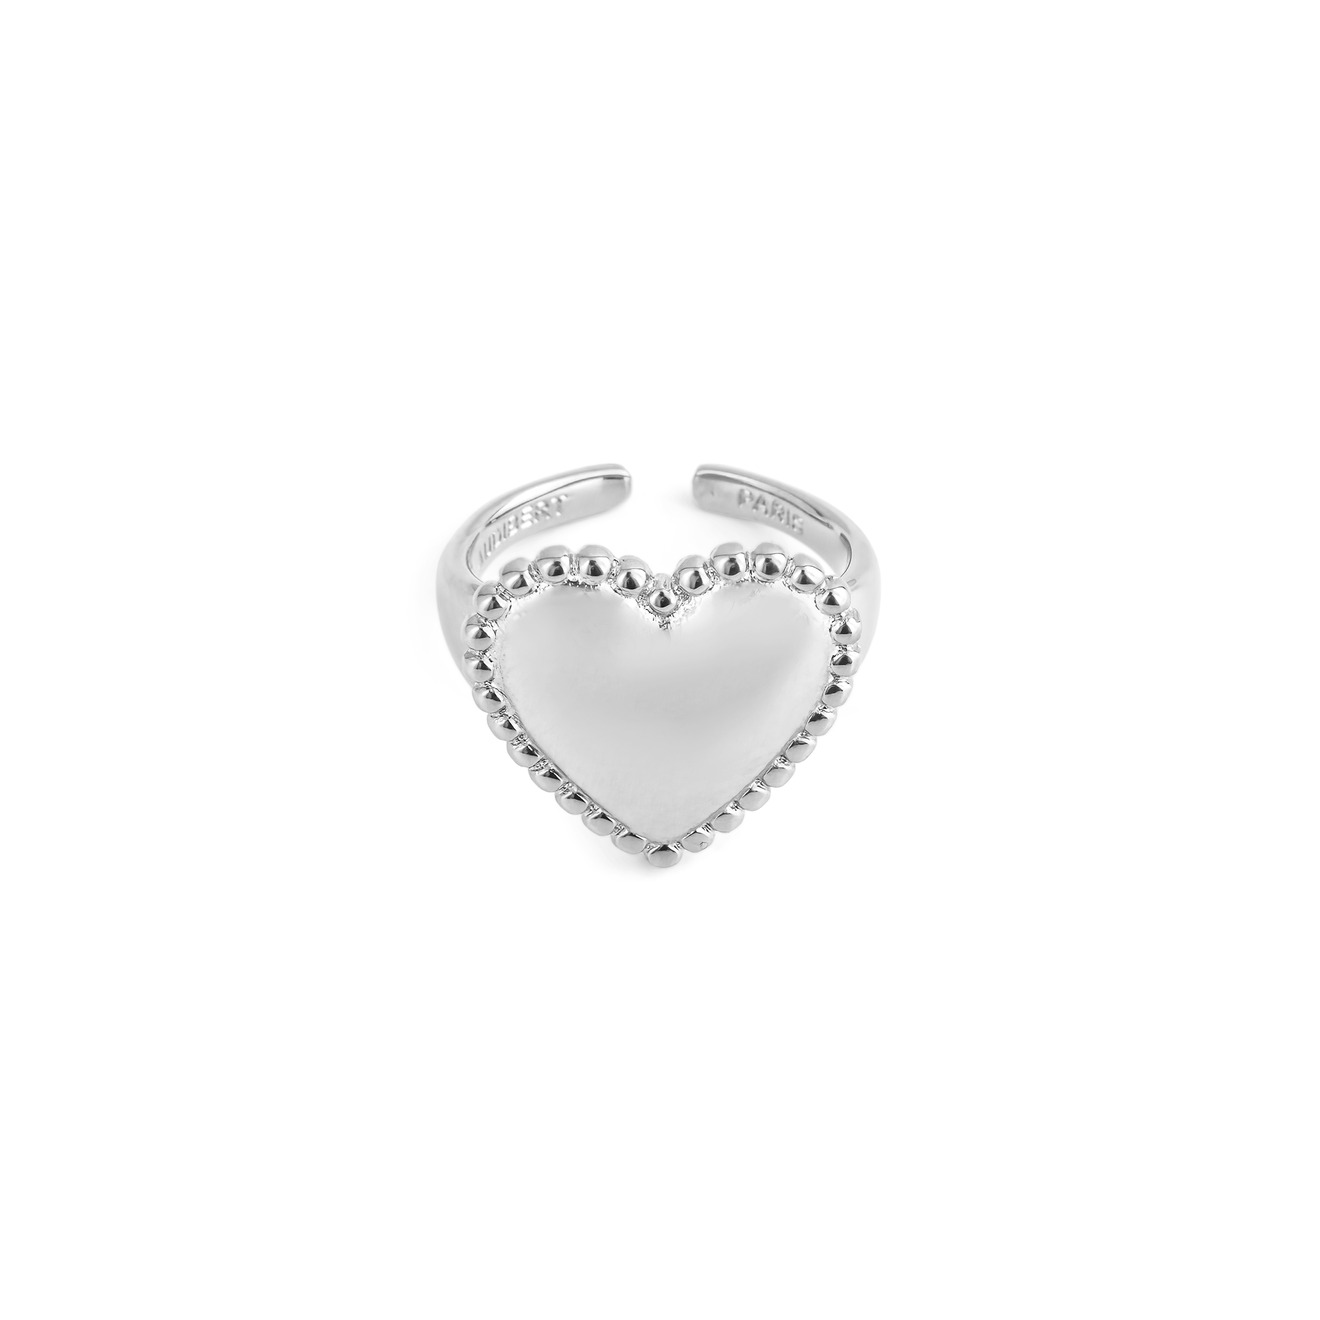 Philippe Audibert Кольцо с сердцем Wanda с серебряным покрытием wanda p361 7 00 21 r10